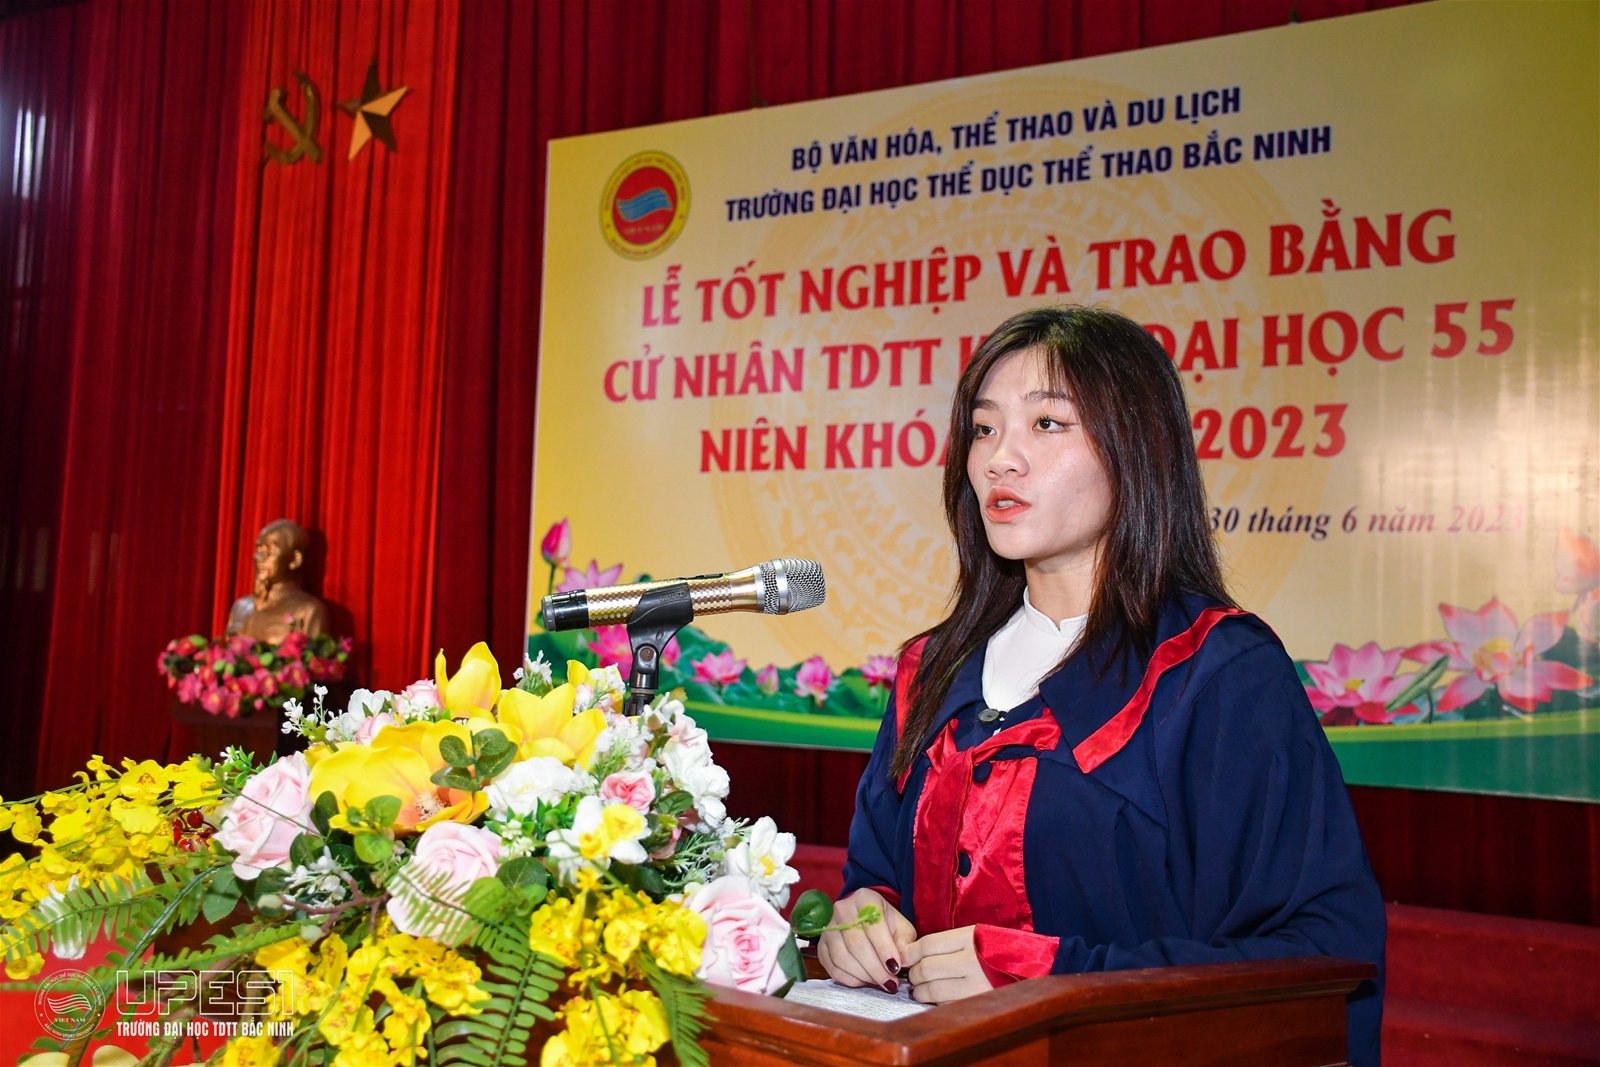 Trường Đại học TDTT Bắc Ninh - Lễ tốt nghiệp và trao bằng cử nhân TDTT năm 2023 - Ảnh 3.